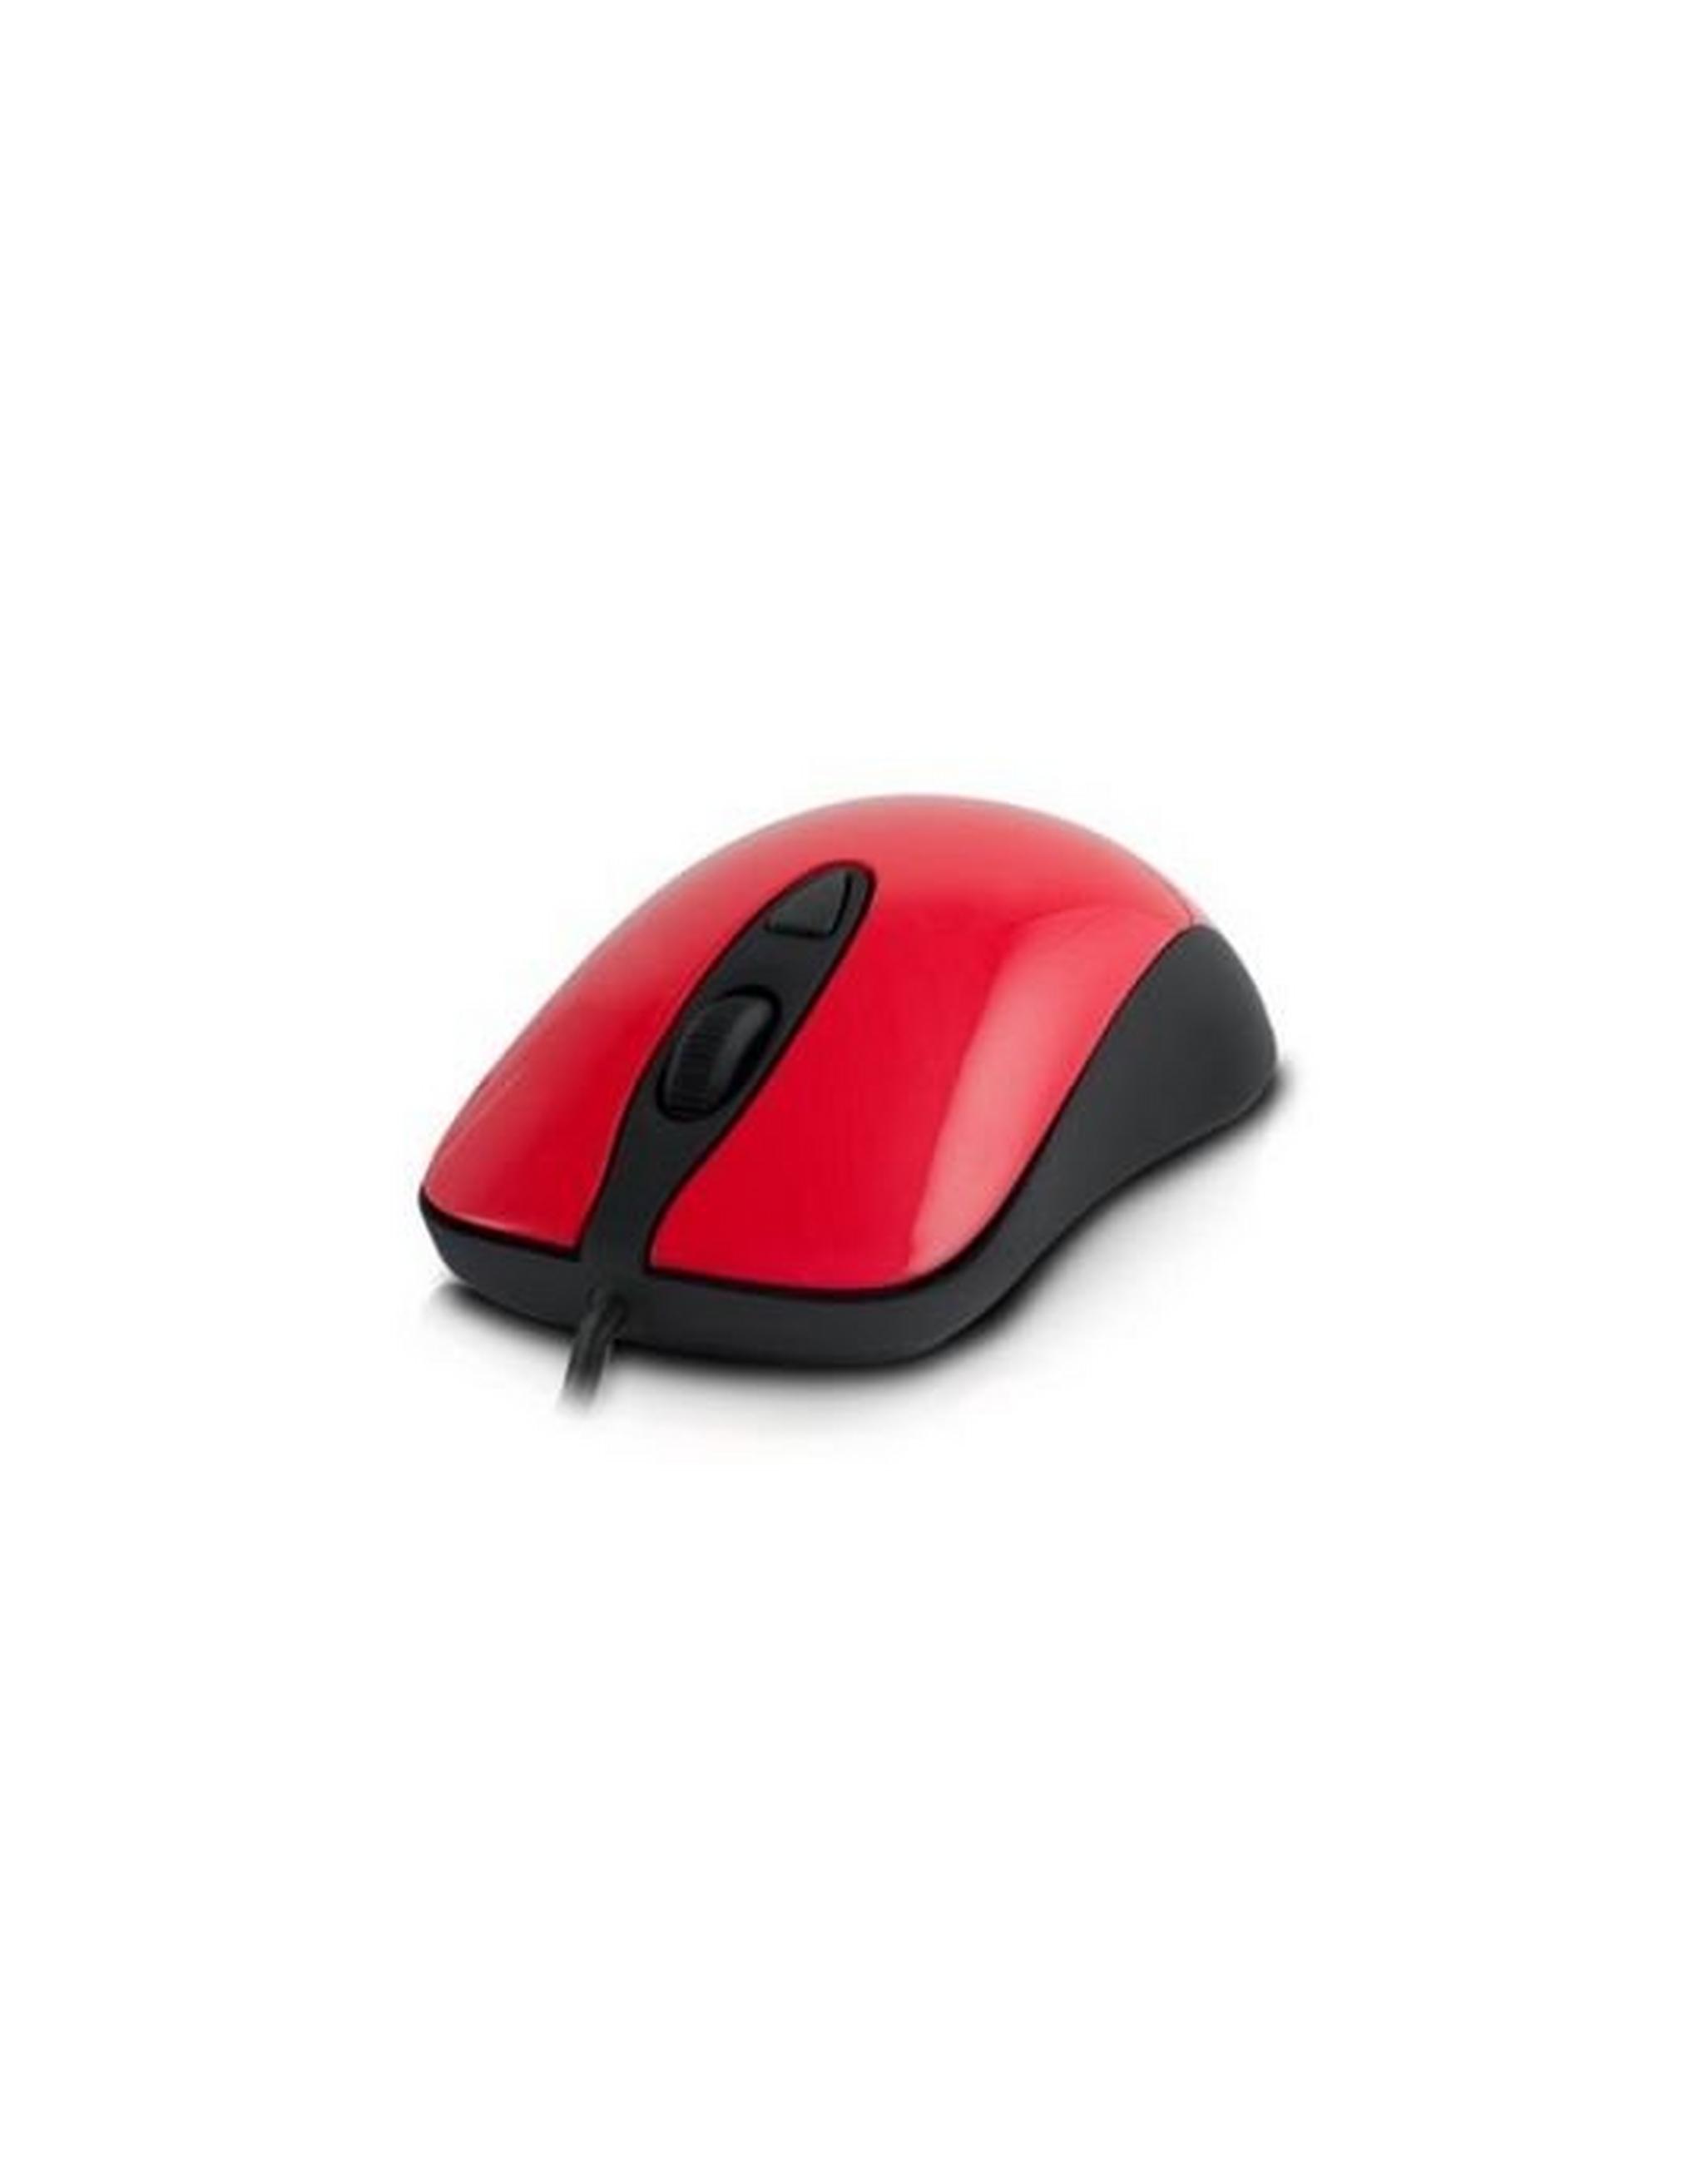 MSI SteelSeries Kinzu Gaming Mouse - Red